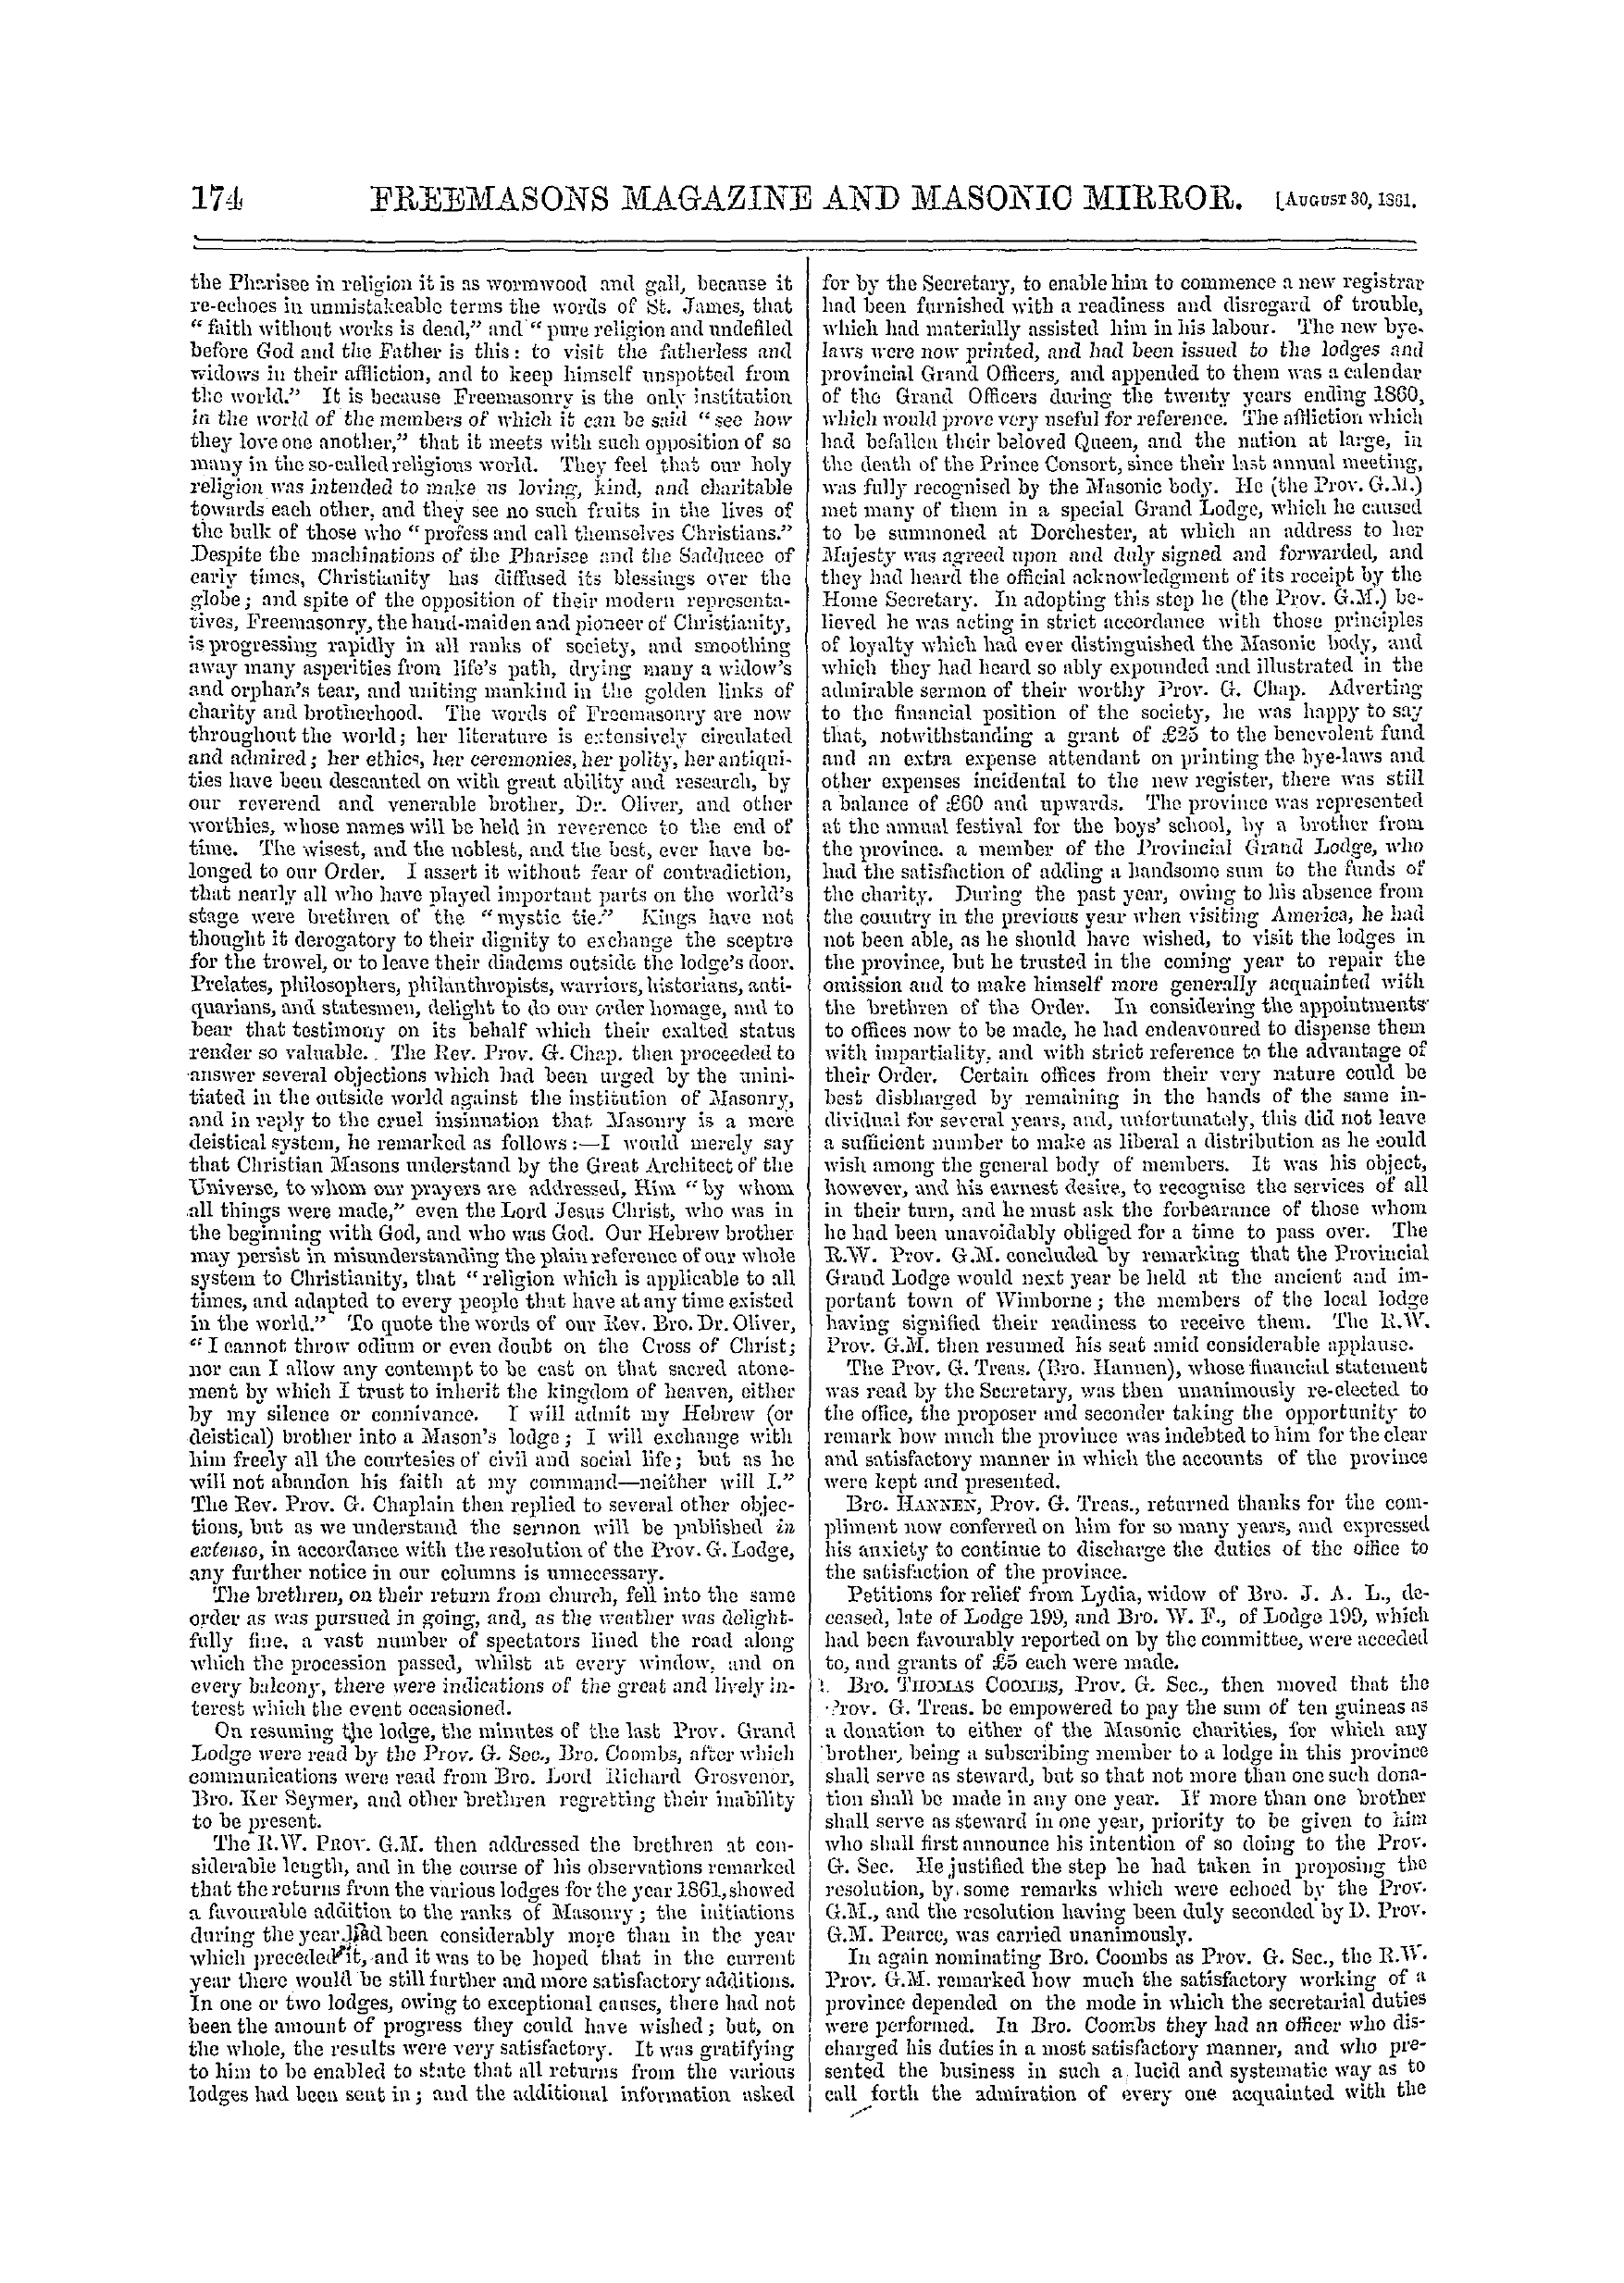 The Freemasons' Monthly Magazine: 1862-08-30: 14